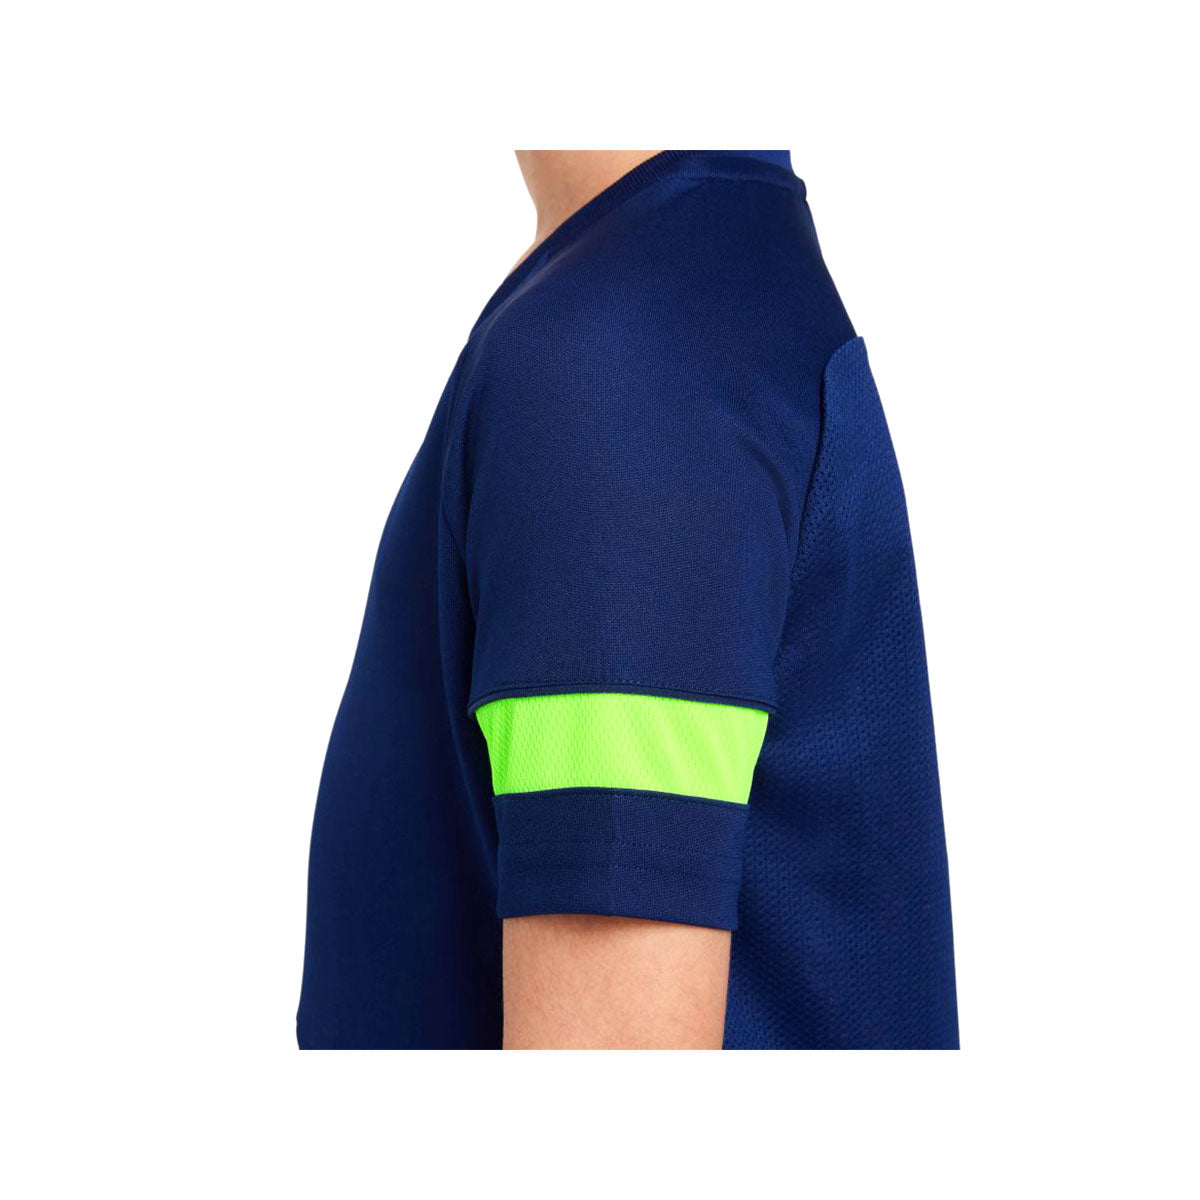 Nike GS NY Academy 21 T-Shirt - KickzStore